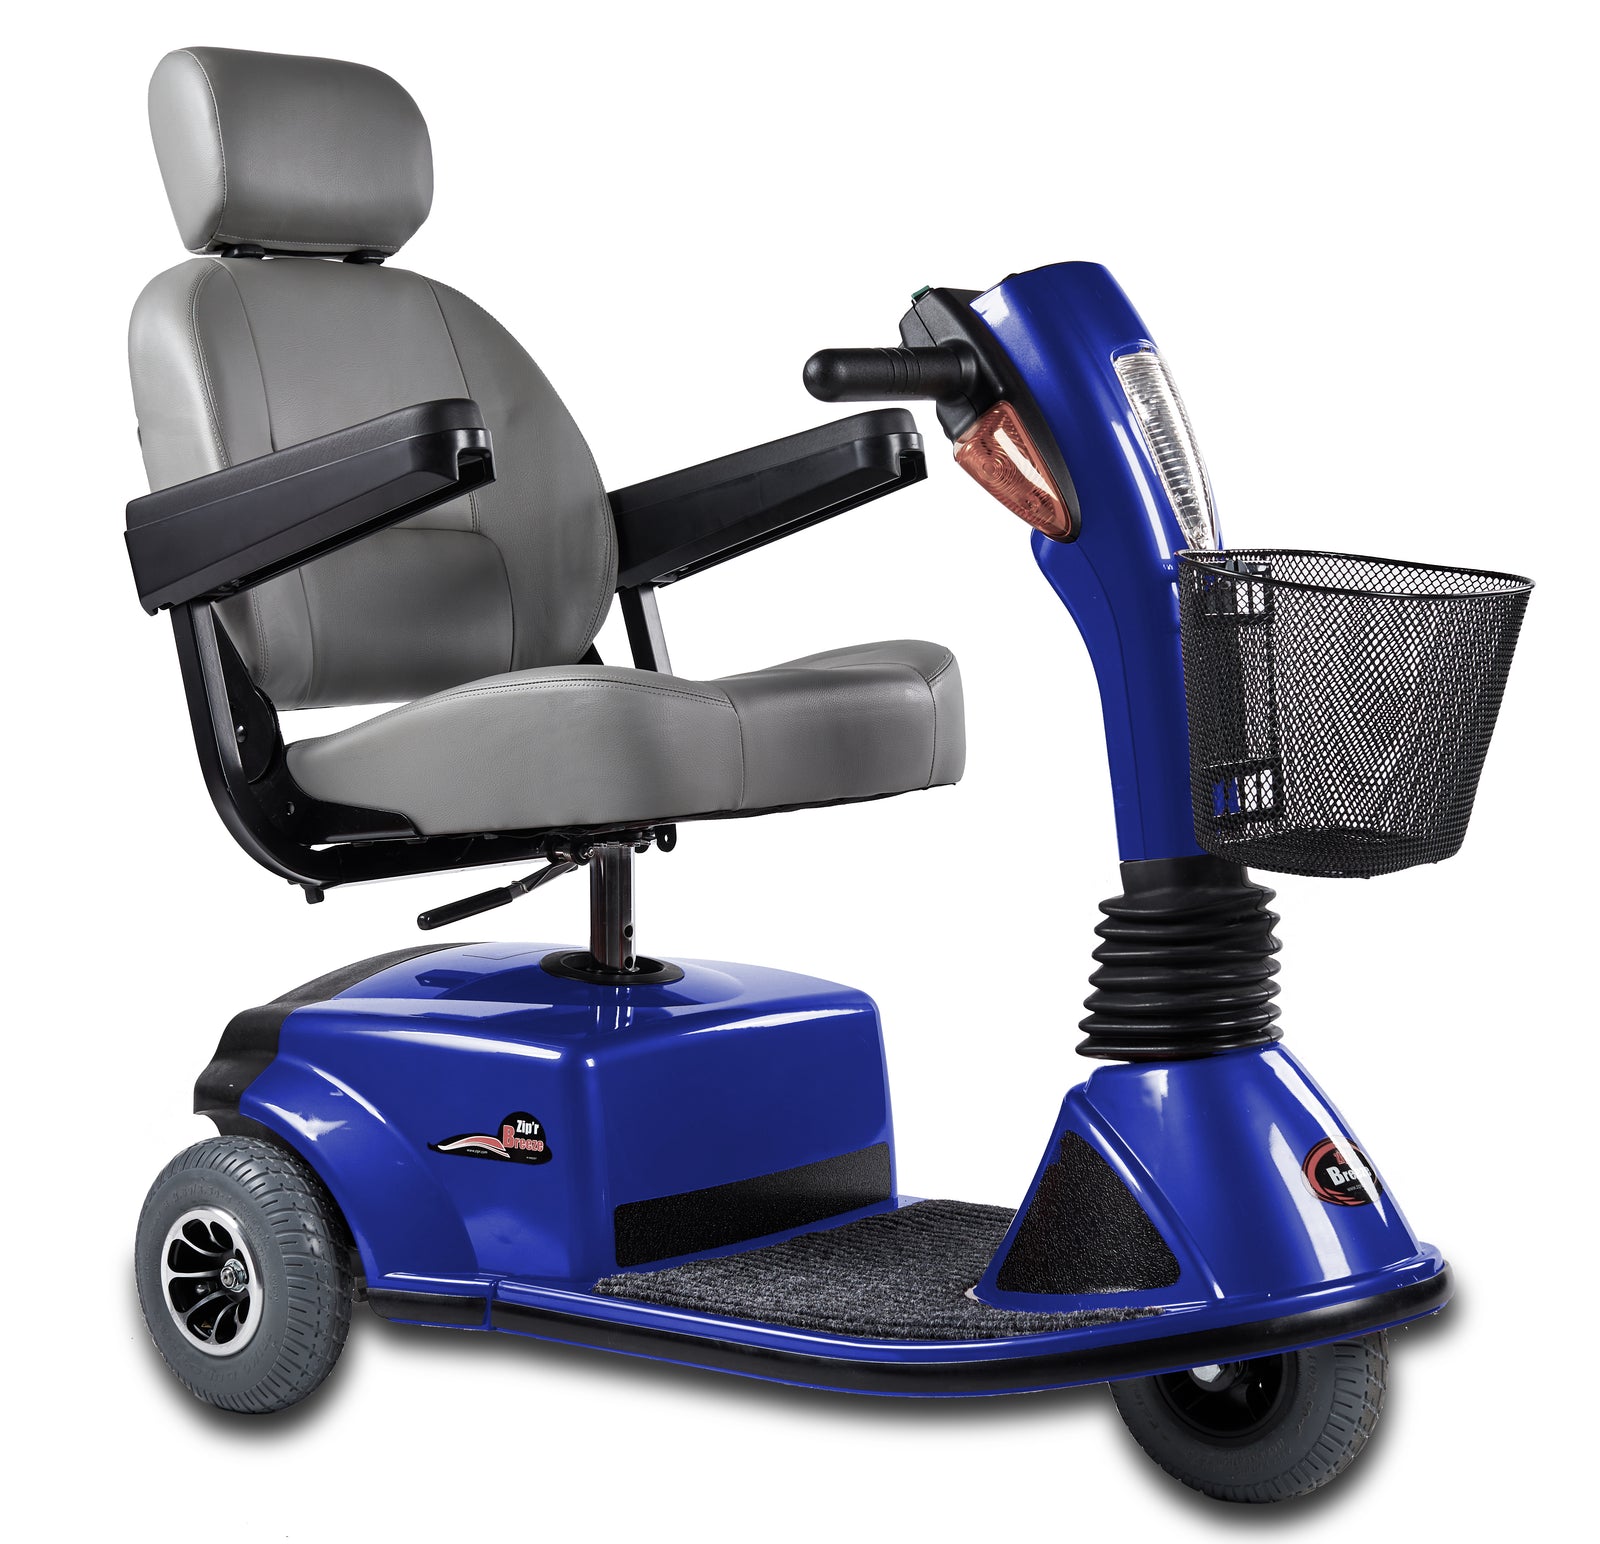 Scooter électrique de mobilité pour seniors, City Shopper by AIC